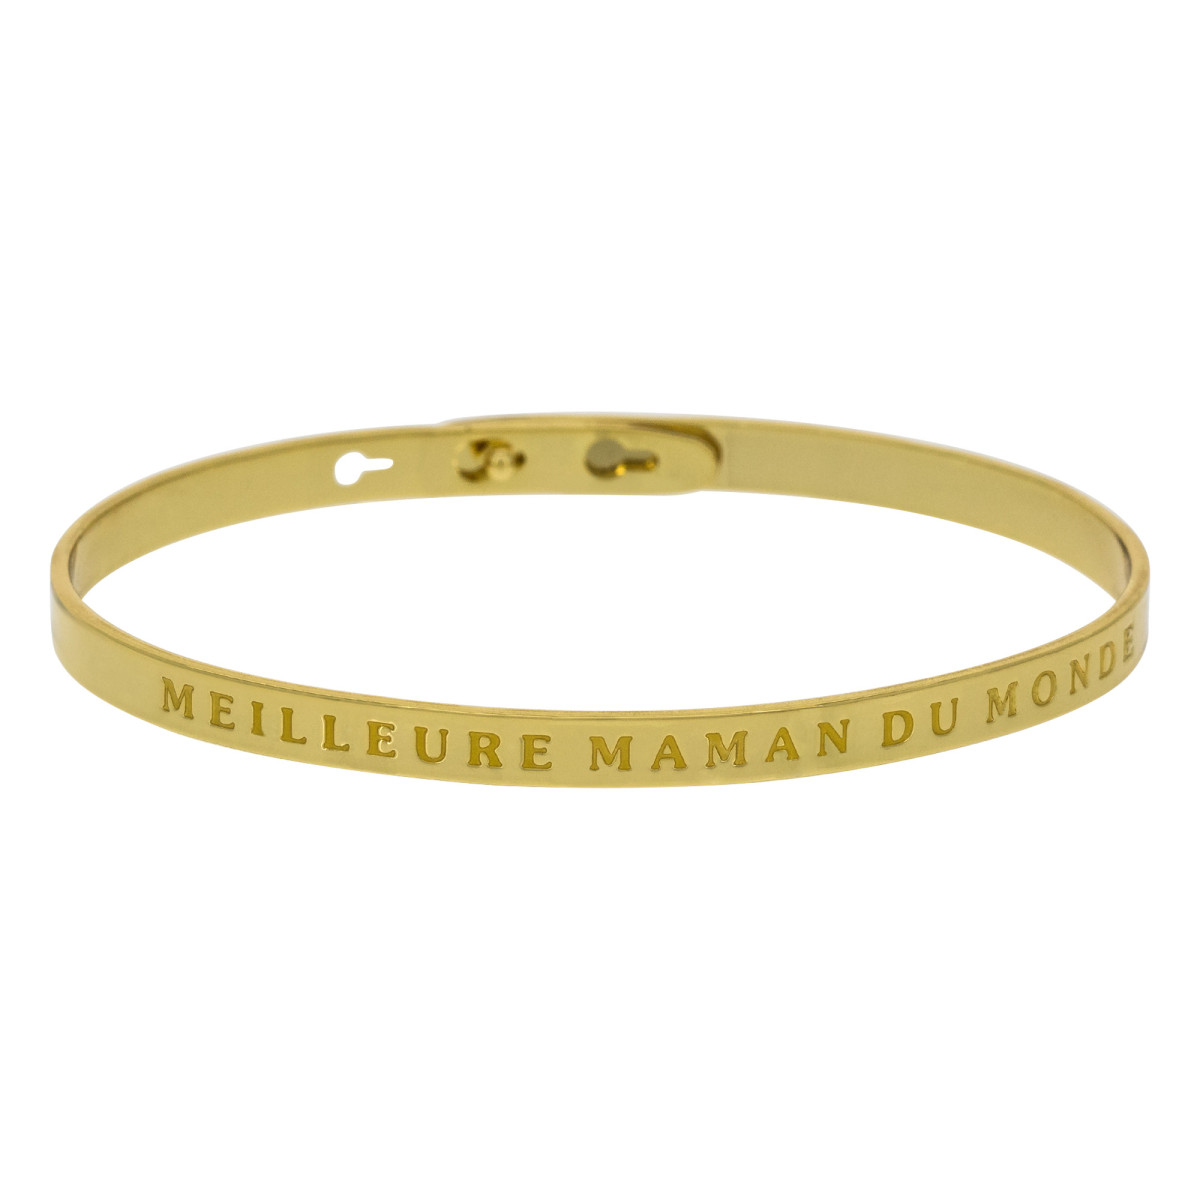 "MEILLEURE MAMAN DU MONDE" bracelet jonc doré à message